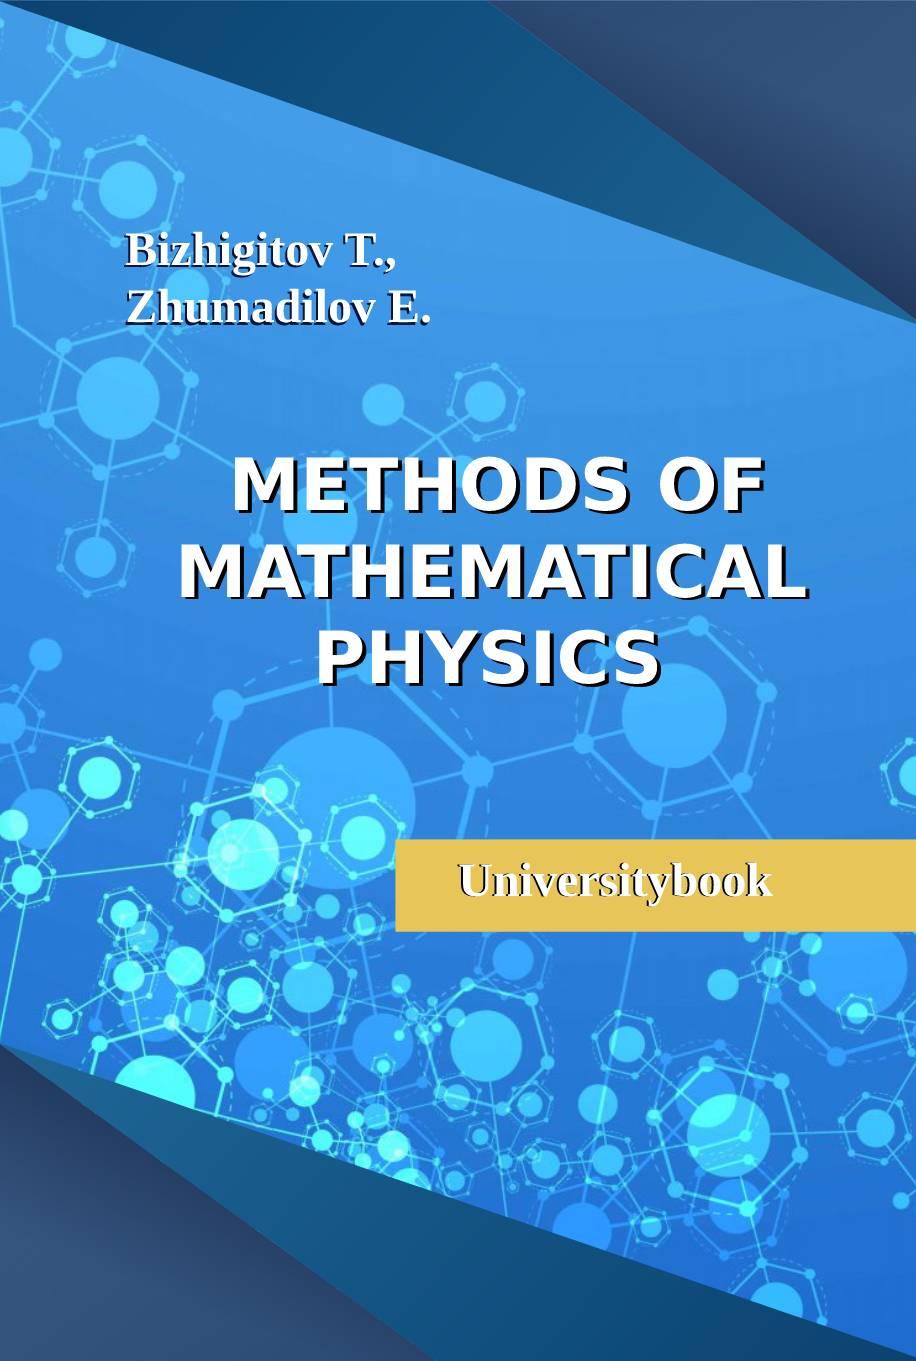 Methods of mathematical physics: Universitybook.